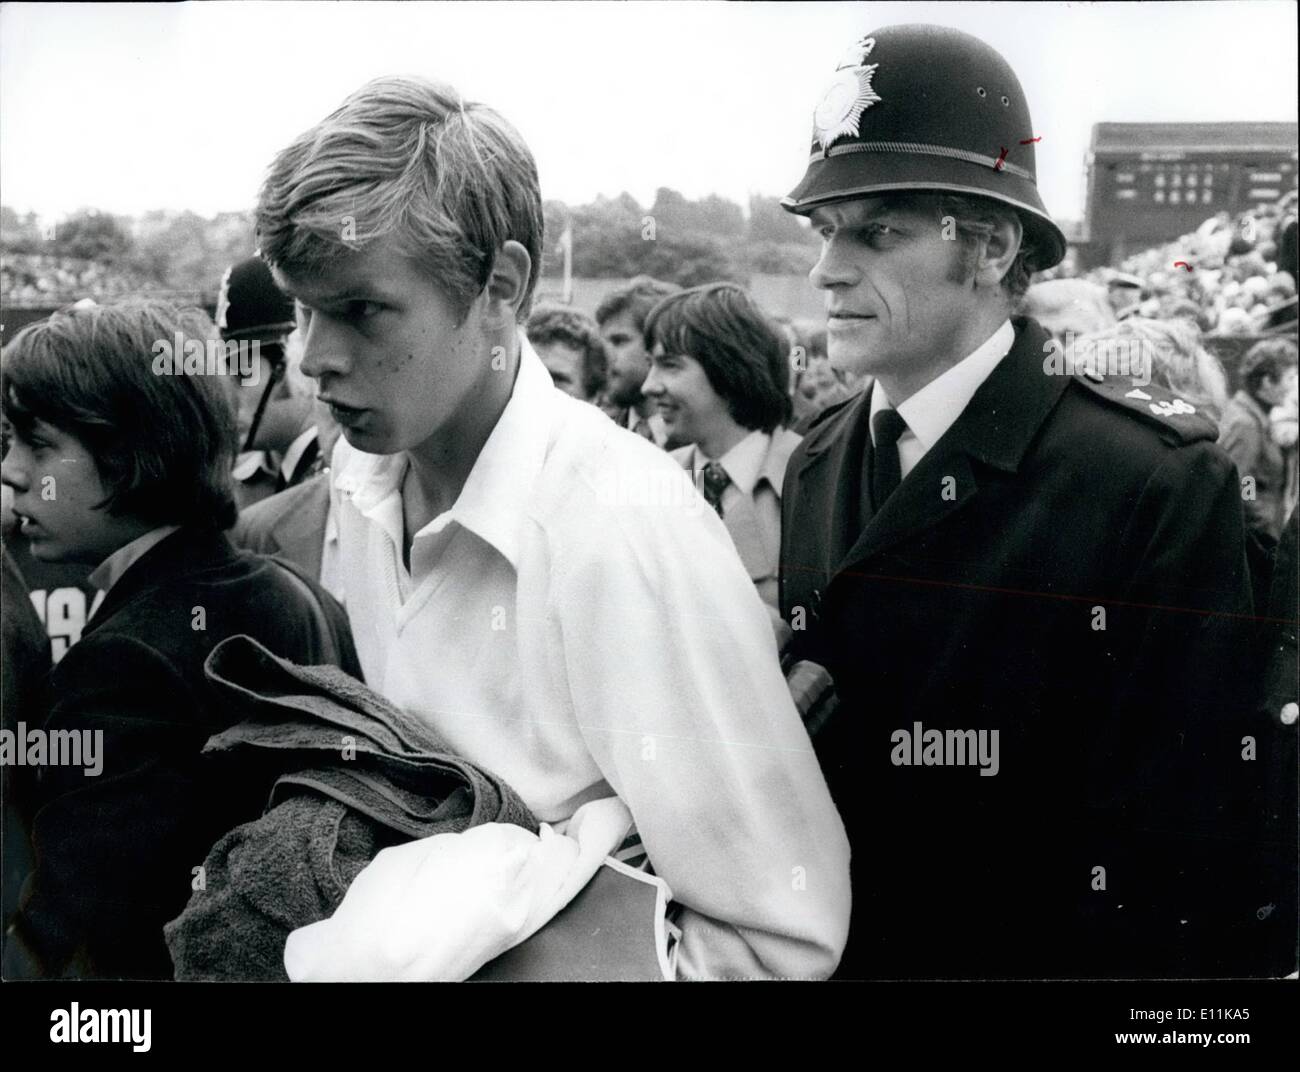 Juin 06, 1978 - Championnats de tennis de Wimbledon Buster Mottrom gagne. Photo montre Buster Mottrom étant escorté par un policier comme Banque D'Images